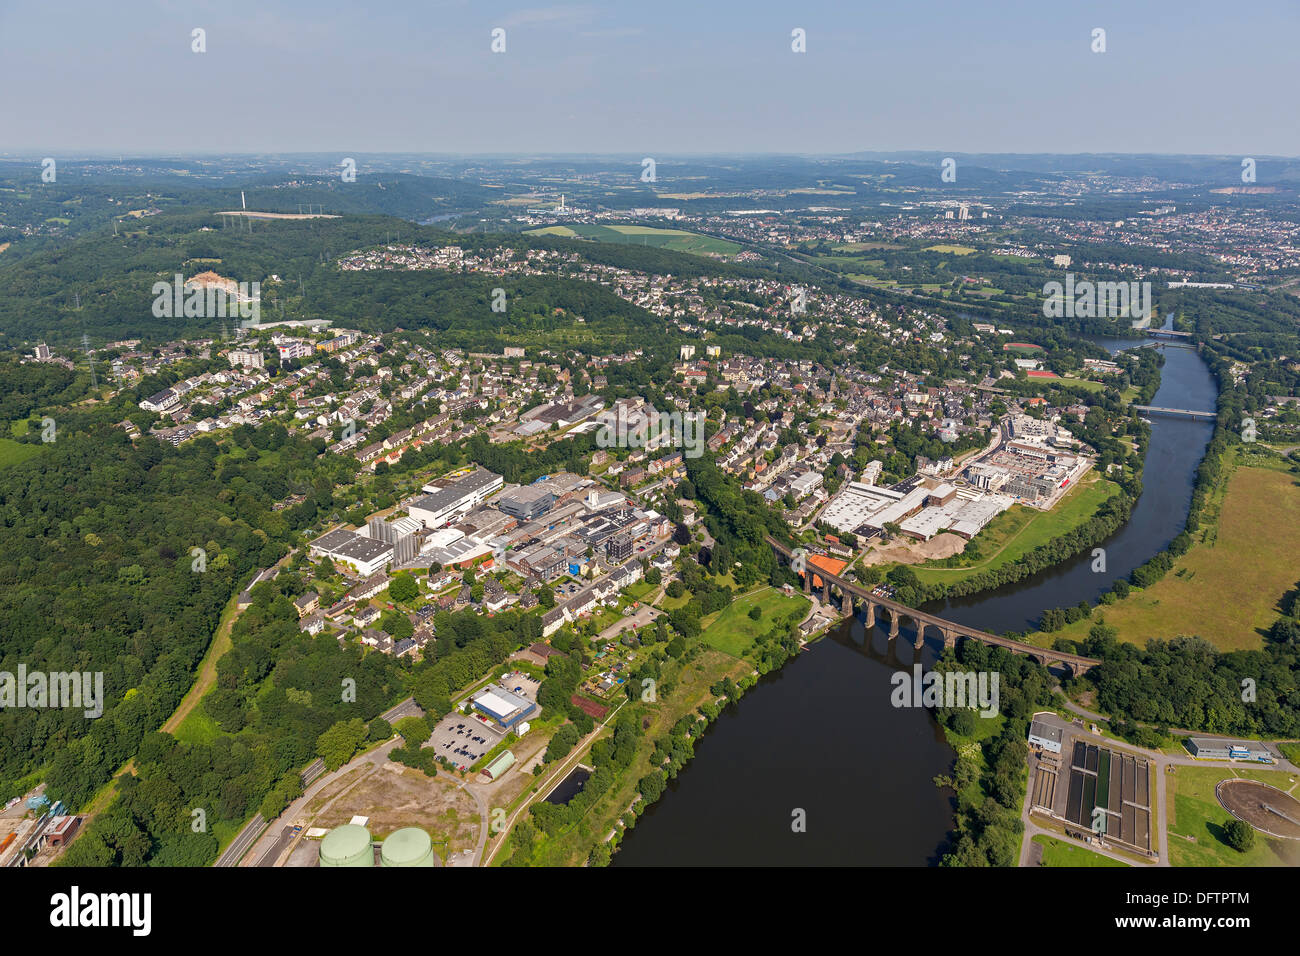 Aerial view, Ruhr river viaduct, premises of the Doerken Holding, Herdecke, North Rhine-Westphalia, Germany Stock Photo